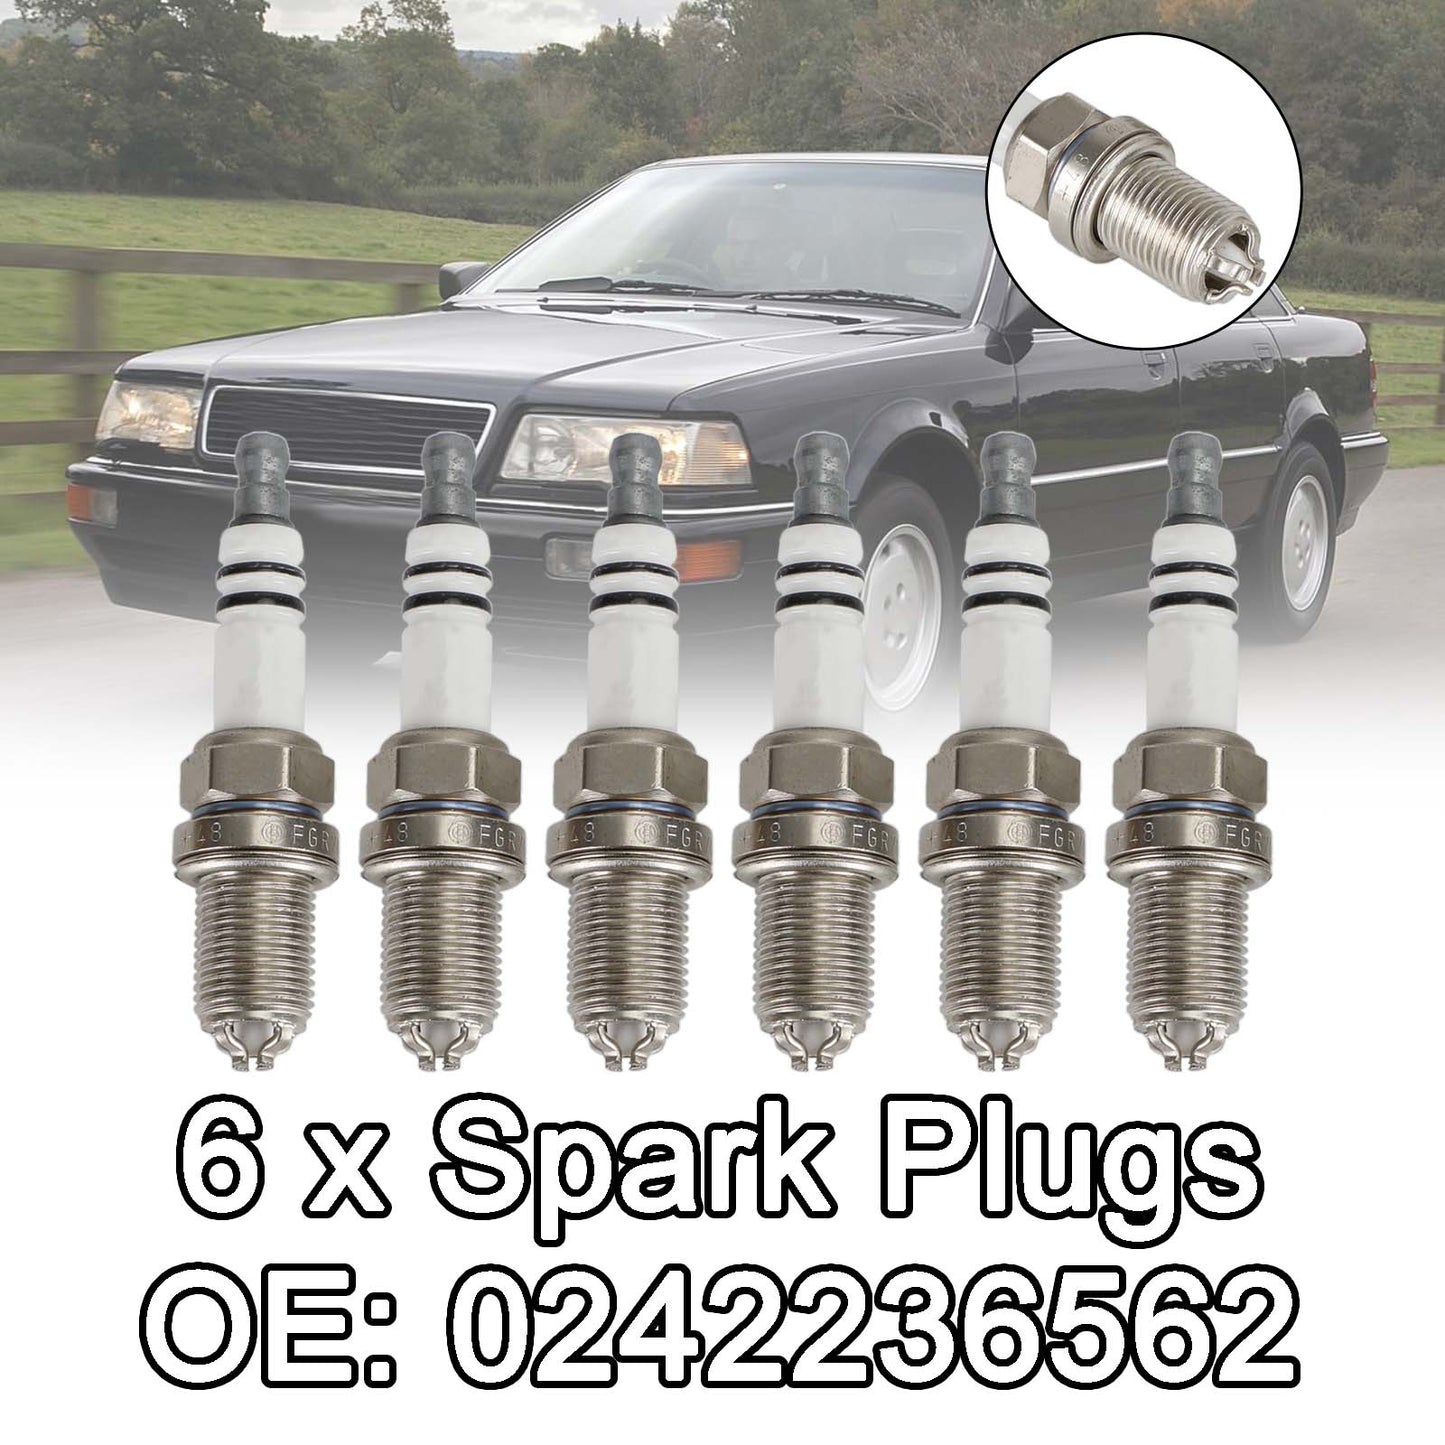 6x Spark Plugs 0242236562 for BMW E36 E46 323i 325i 323i 328i 330i E39